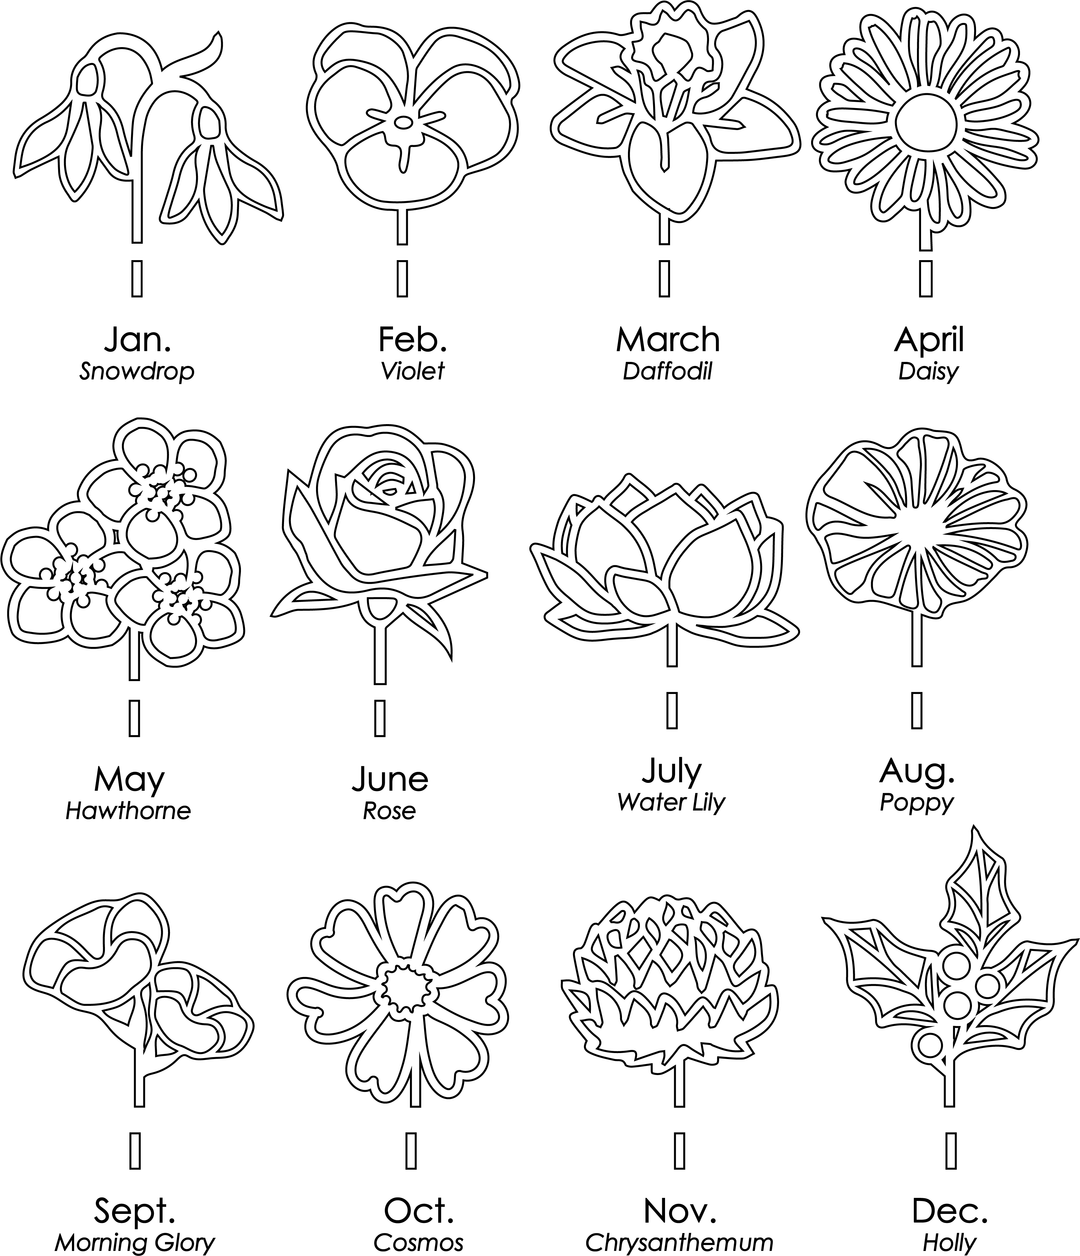 3d Grandma's Garden sign (or custom name) - birth month flower stems